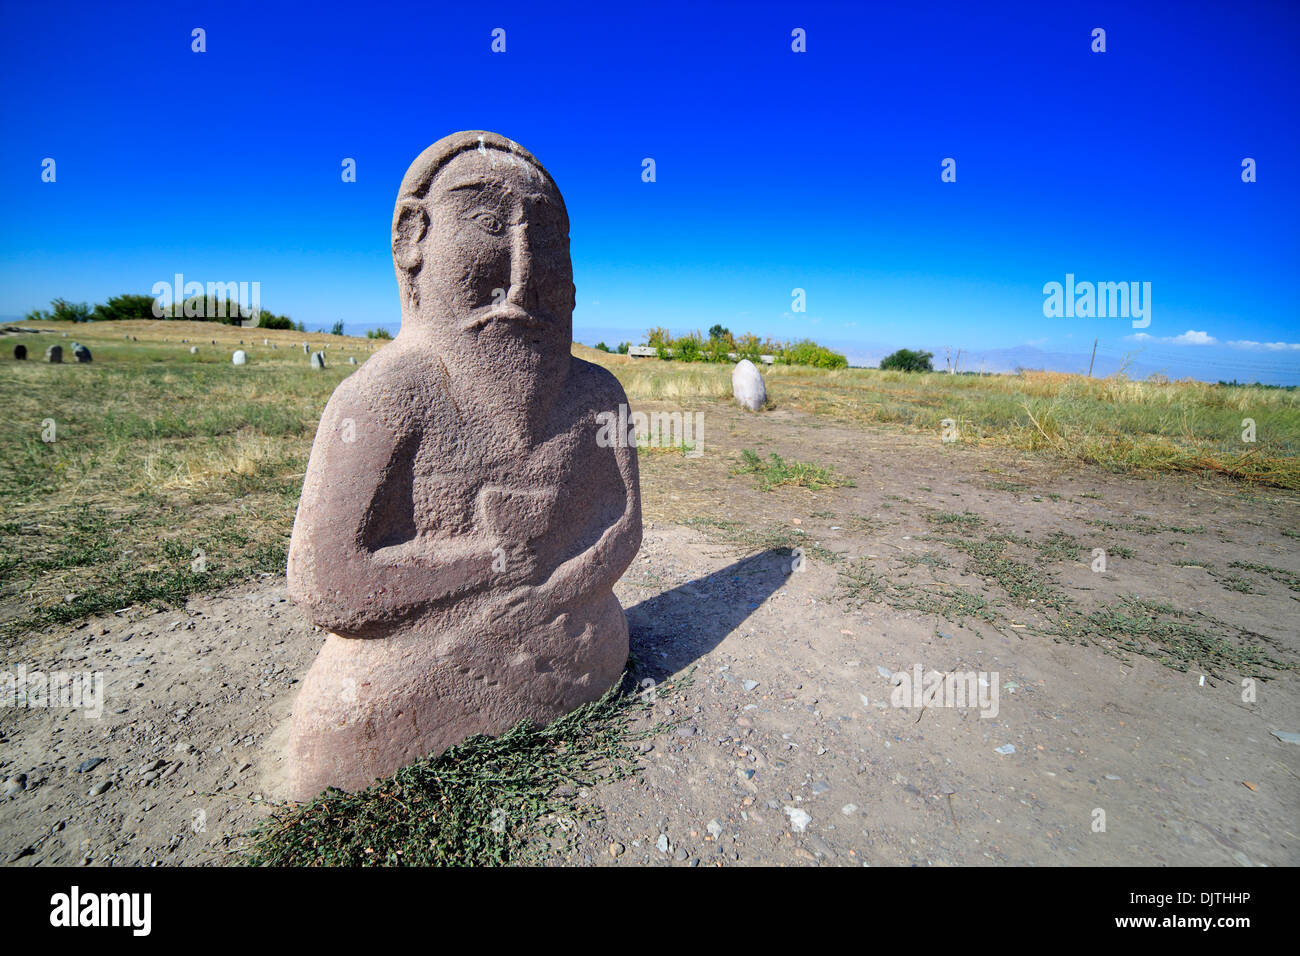 Balbals, d'anciennes sculptures turques (6e-10e siècle), près de la tour Burana, oblast de Chuy, Kirghizistan Banque D'Images